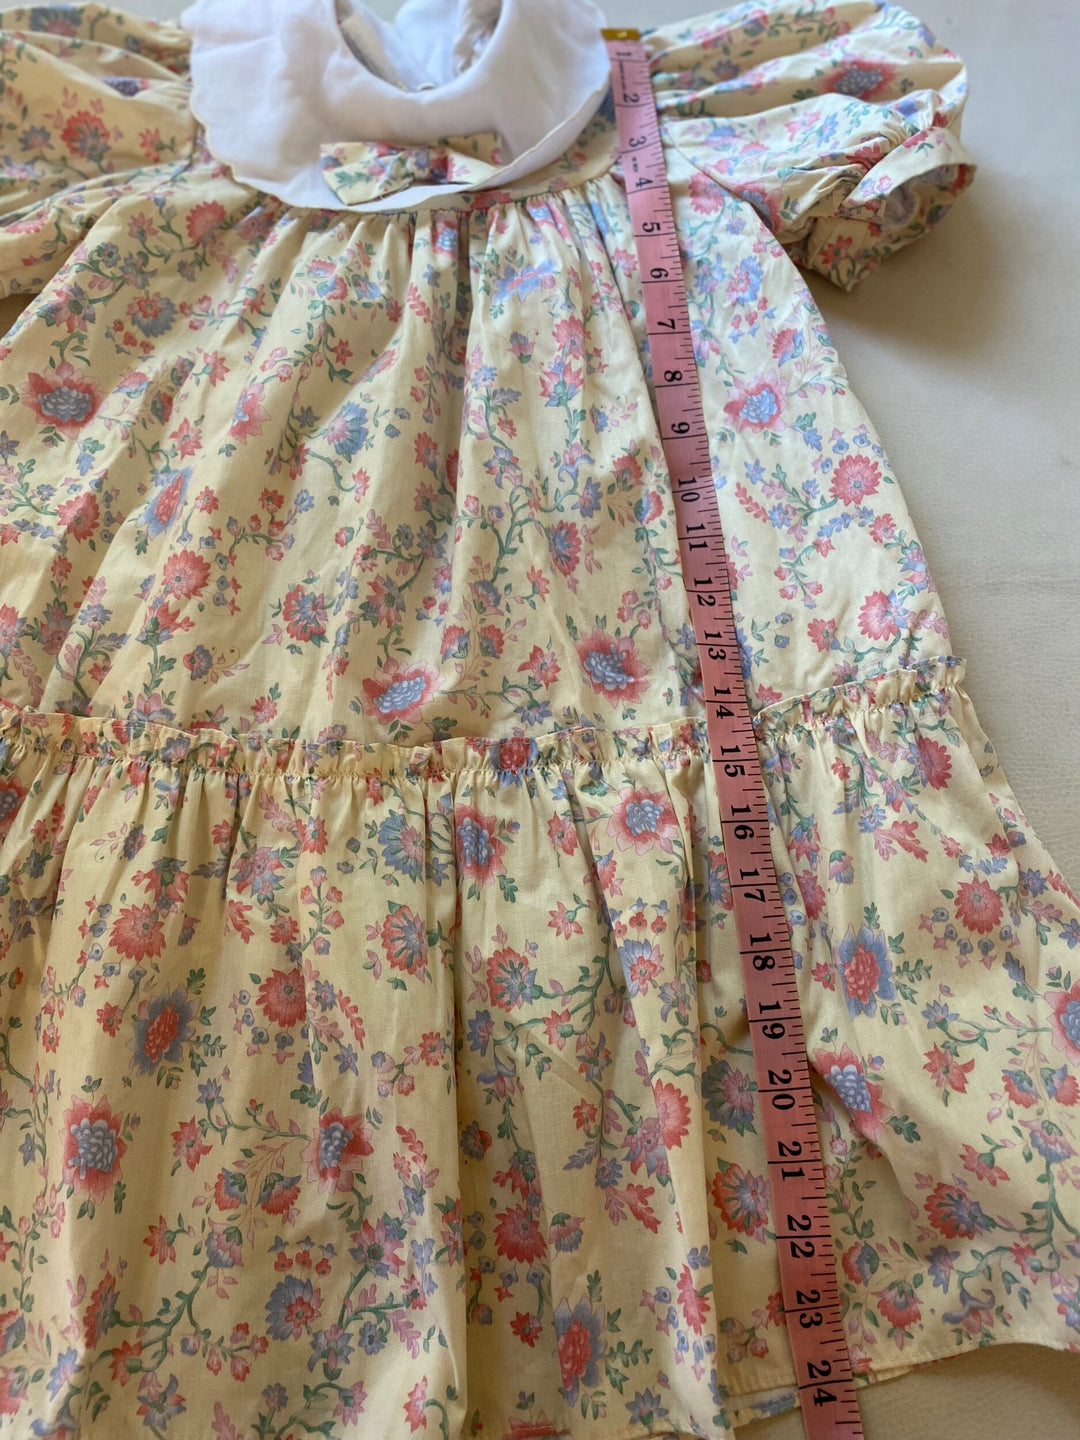 Vintage Polly Flinders Dress Sz 6